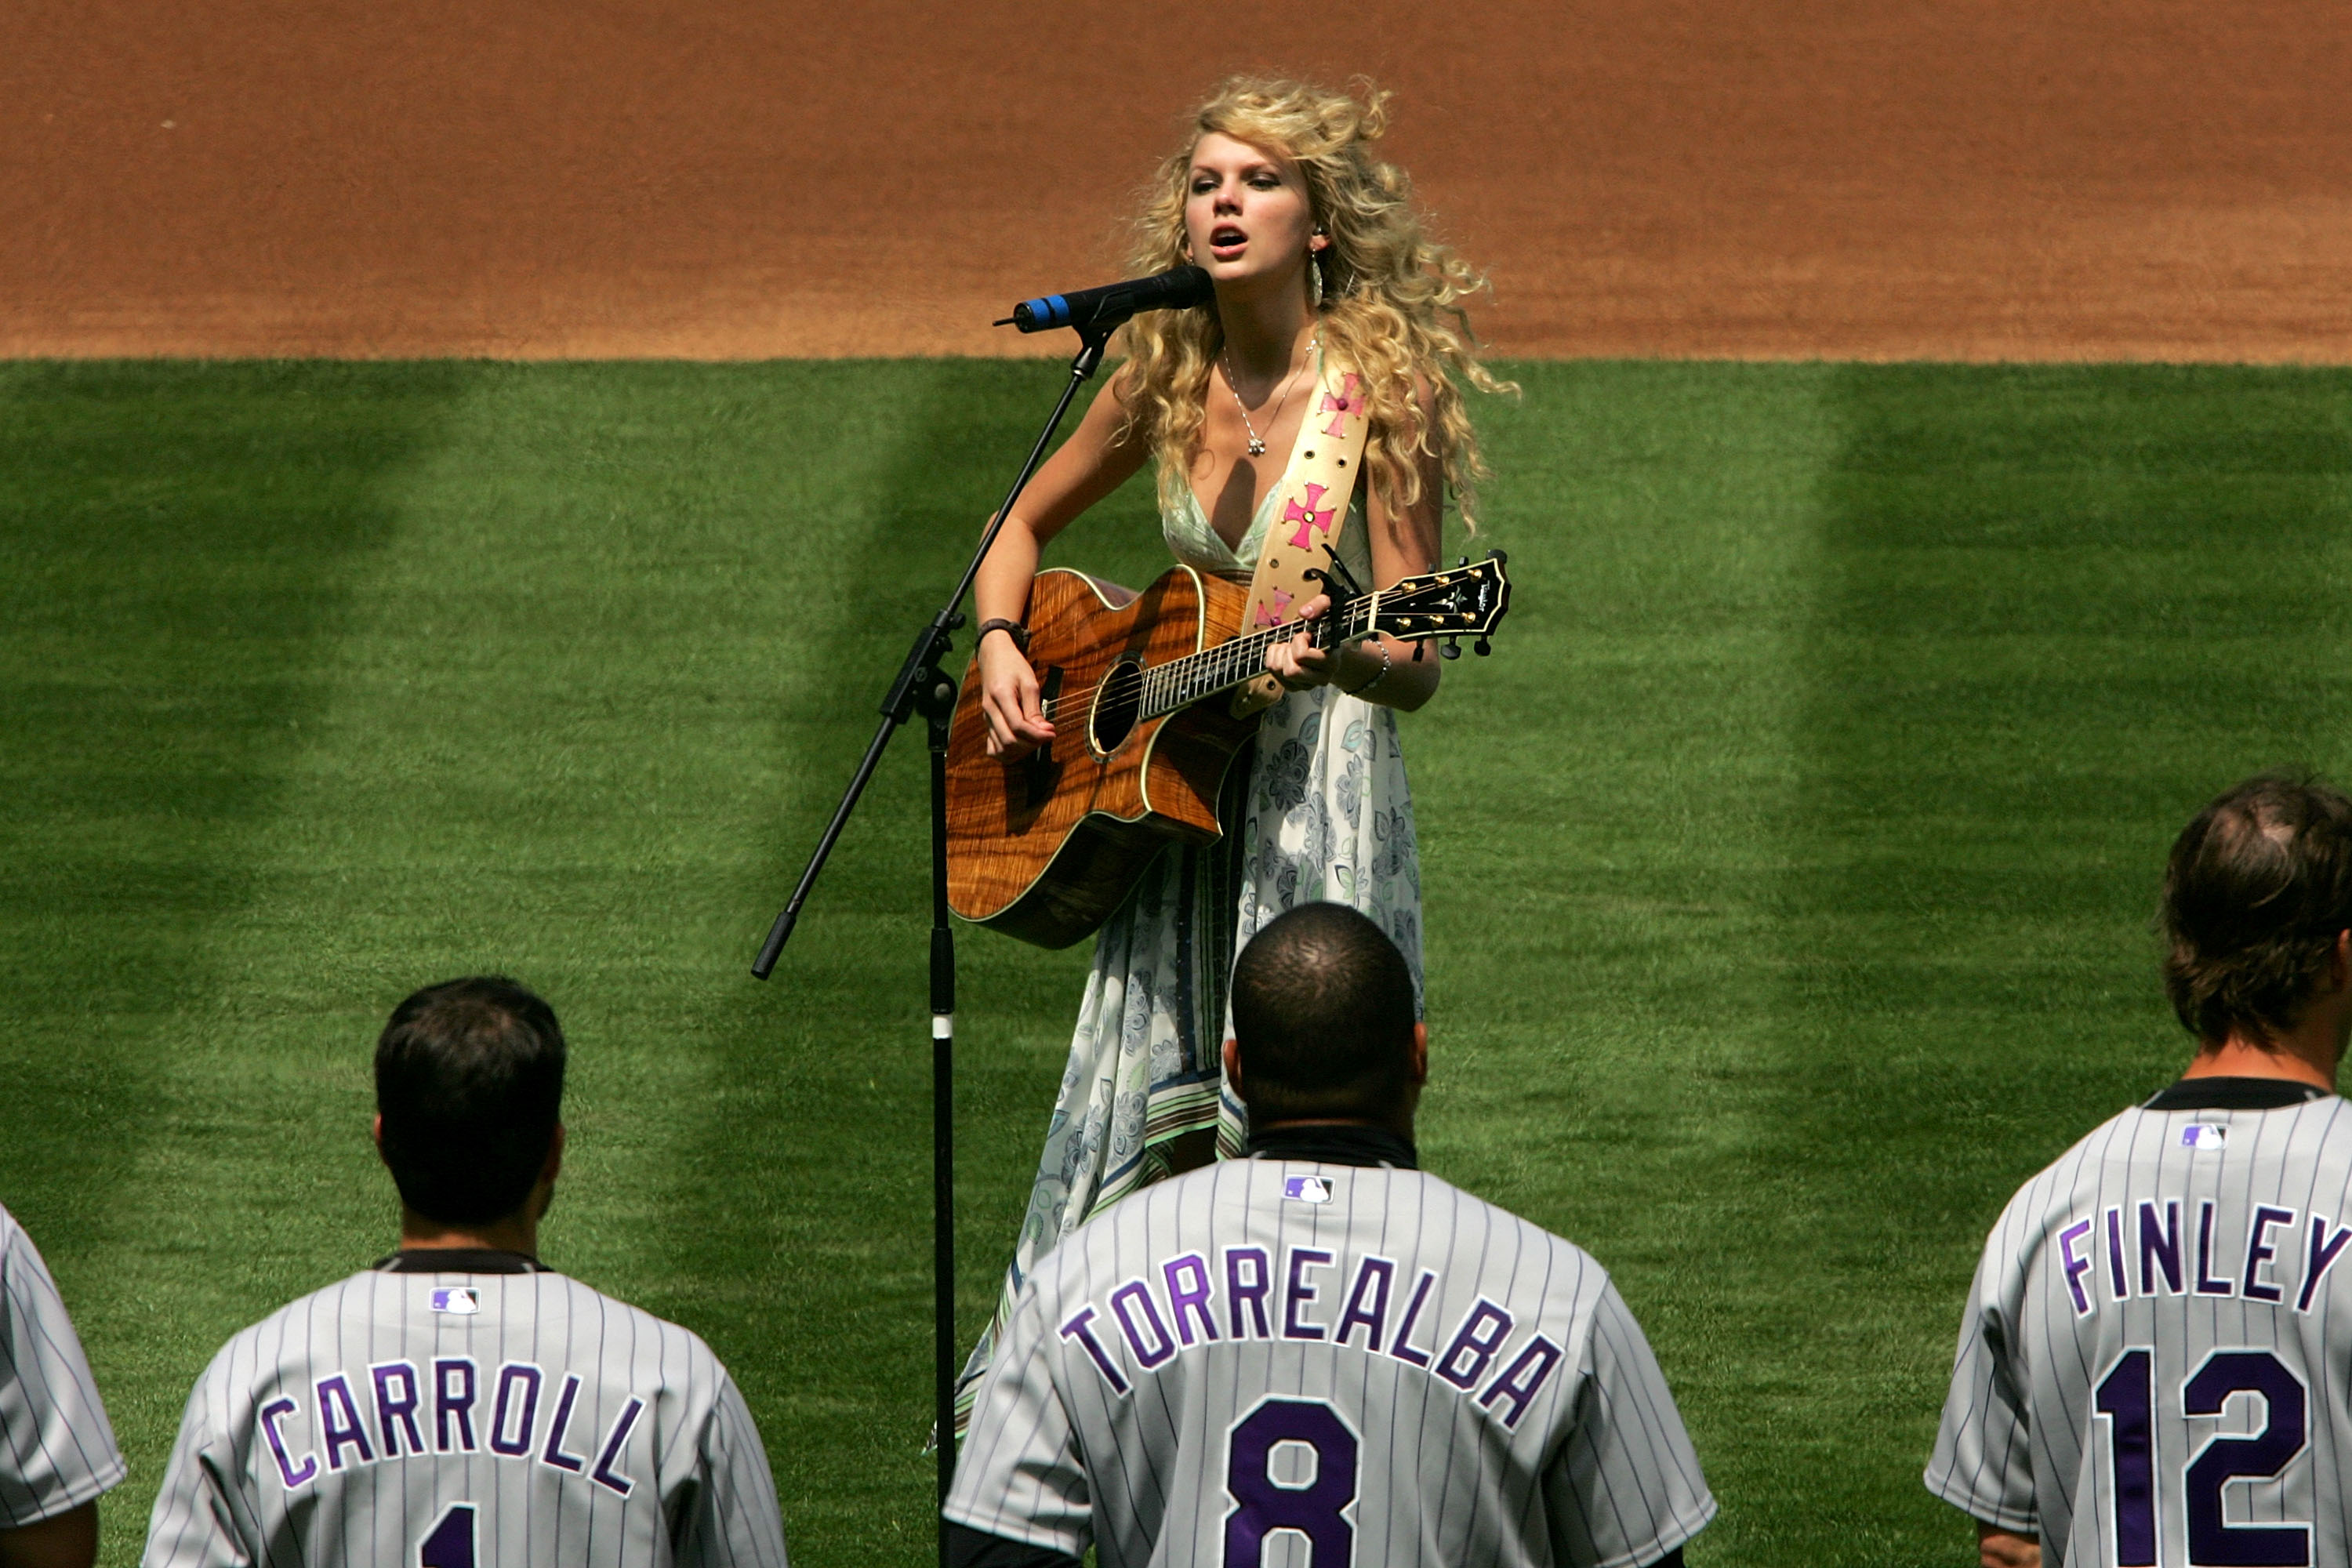 Taylor Swift x LA Dodgers Baseball Jersey - Scesy